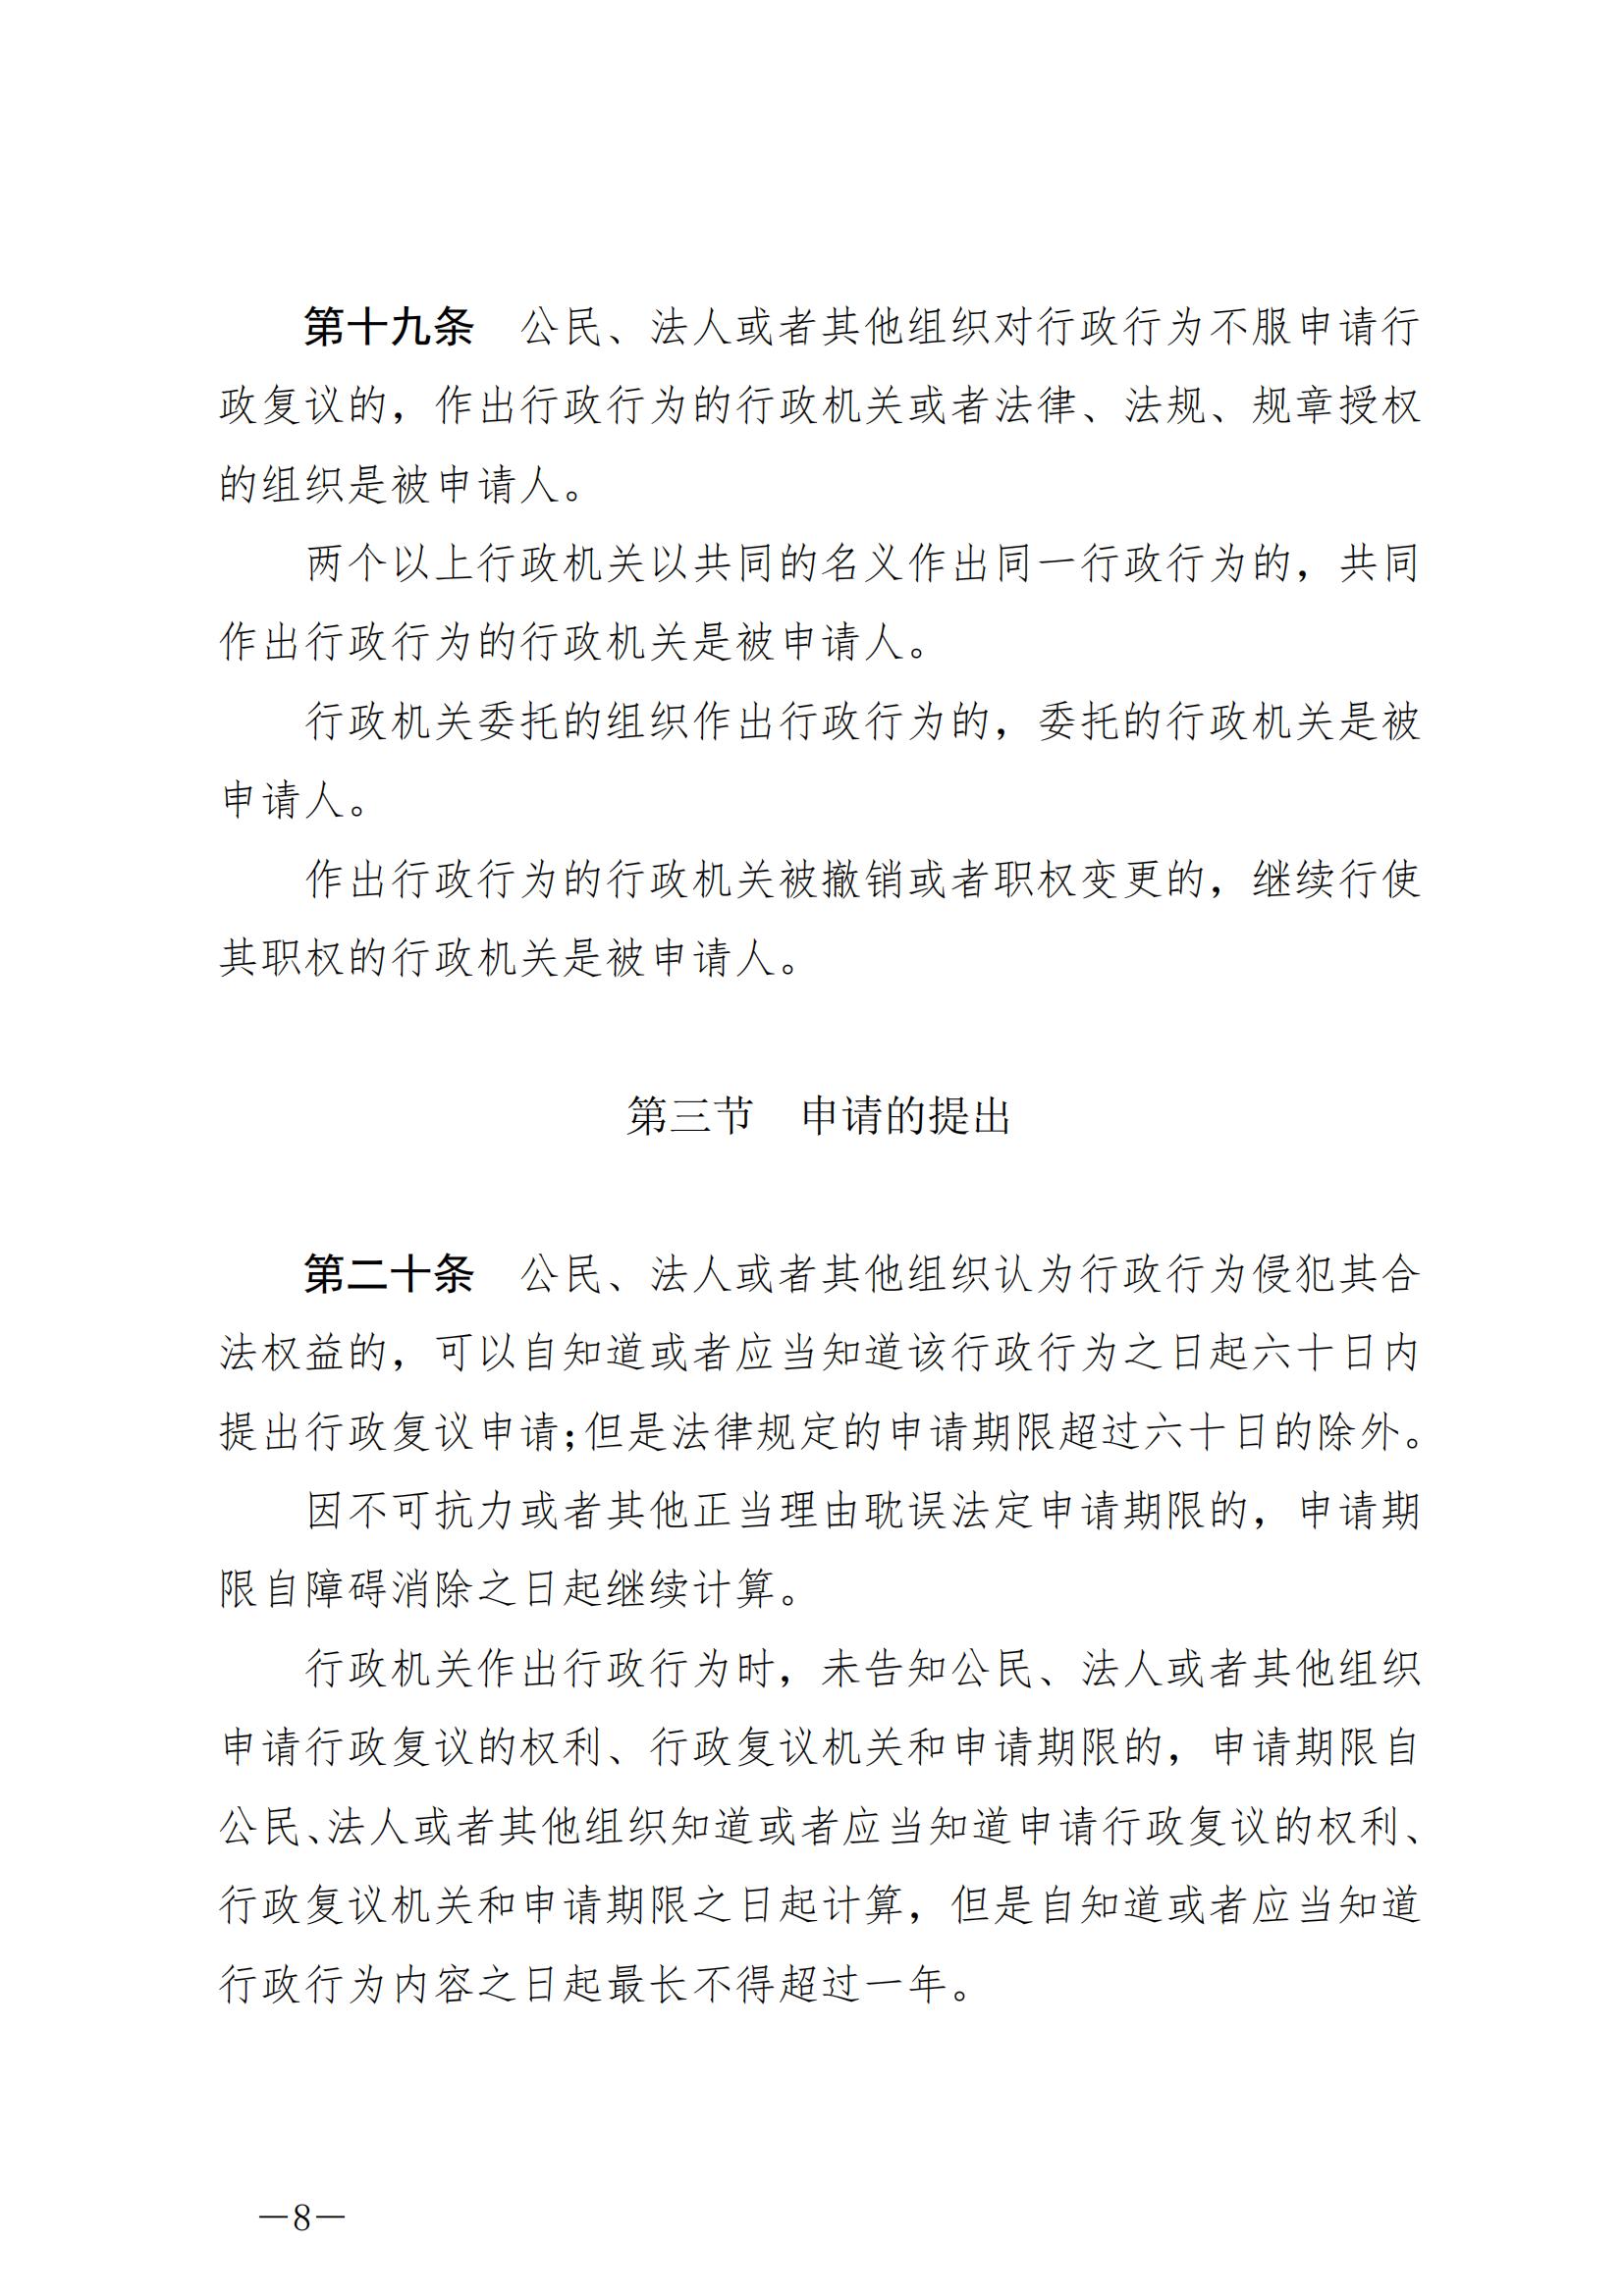 《中华人民共和国行政复议法》_20231204154310_07.jpg